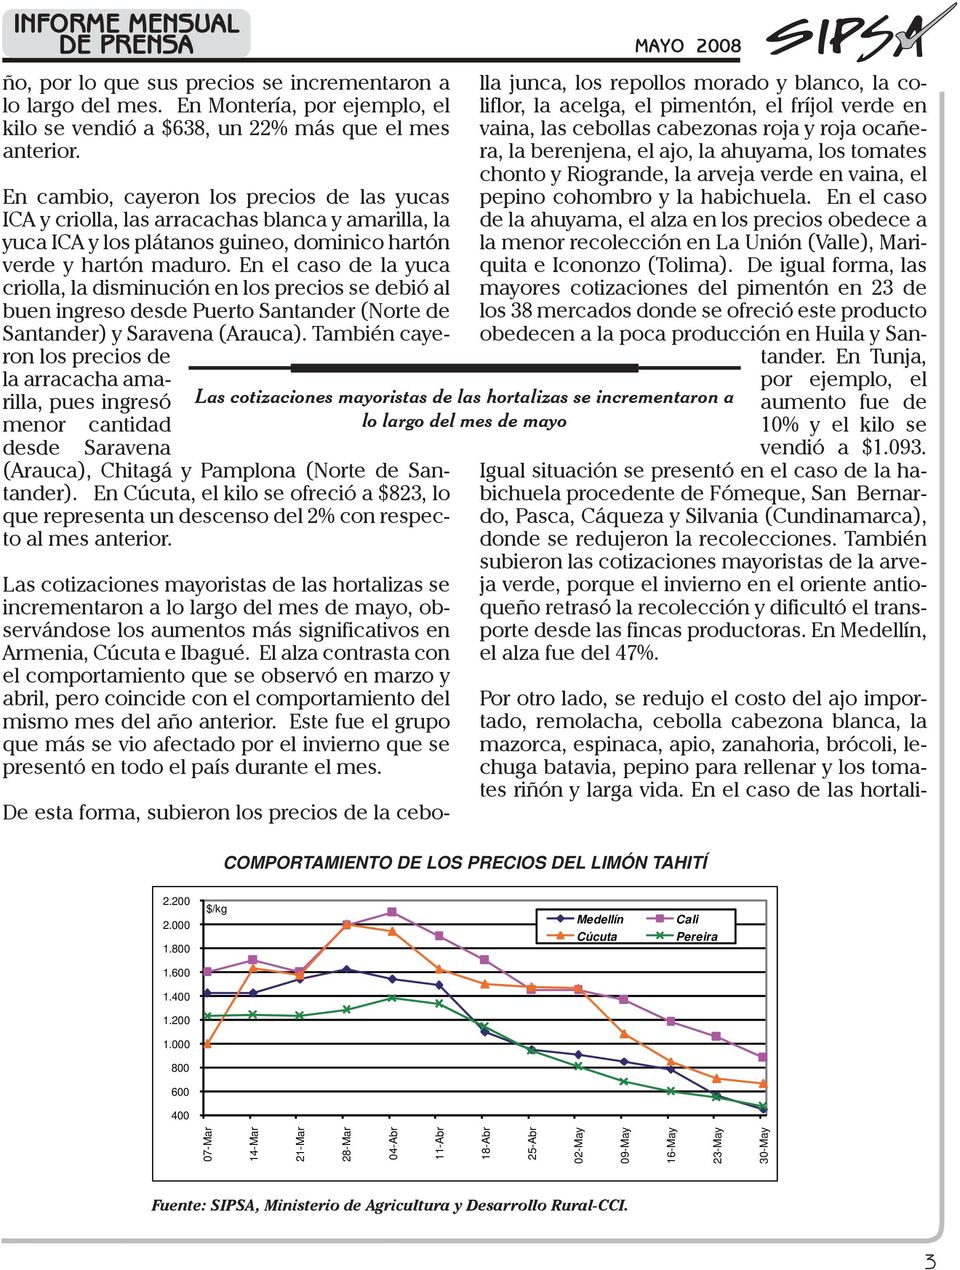 En el caso de la yuca criolla, la disminución en los precios se debió al buen ingreso desde Puerto Santander (Norte de Santander) y Saravena (Arauca).